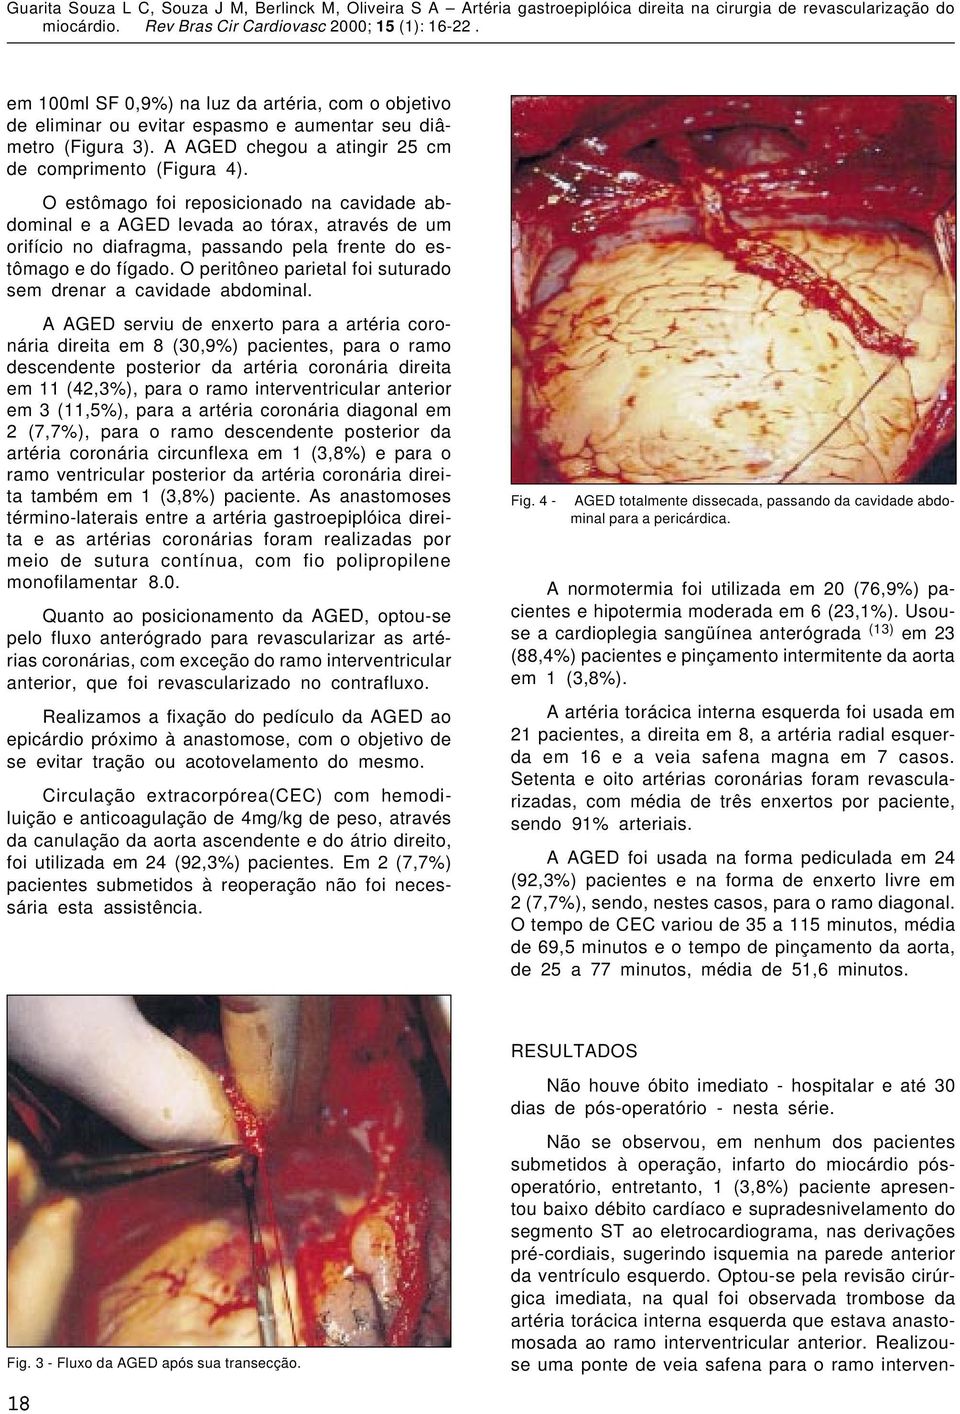 O peritôneo parietal foi suturado sem drenar a cavidade abdominal.